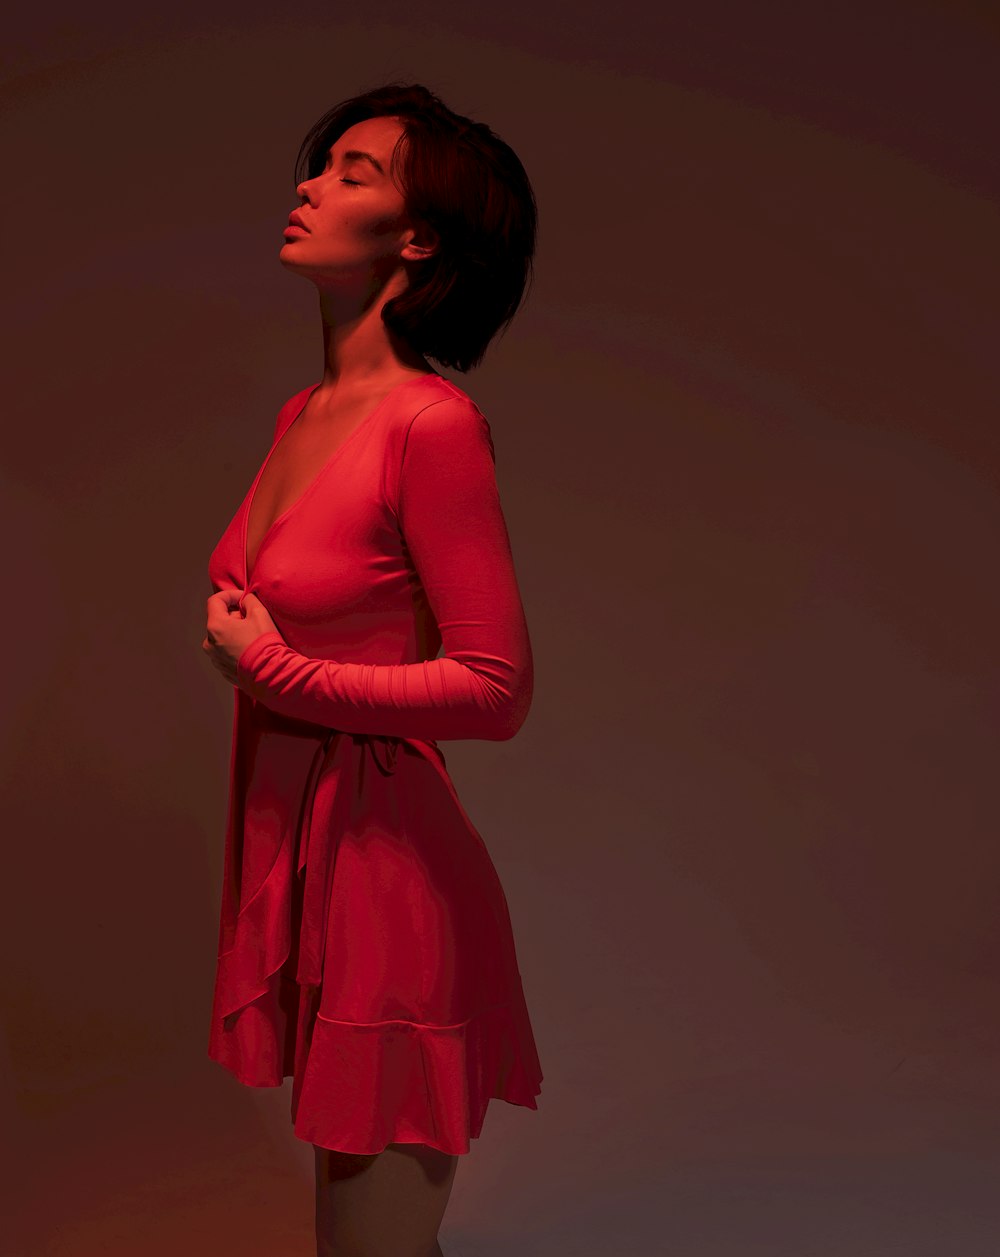 Femme debout en robe rose à manches longues